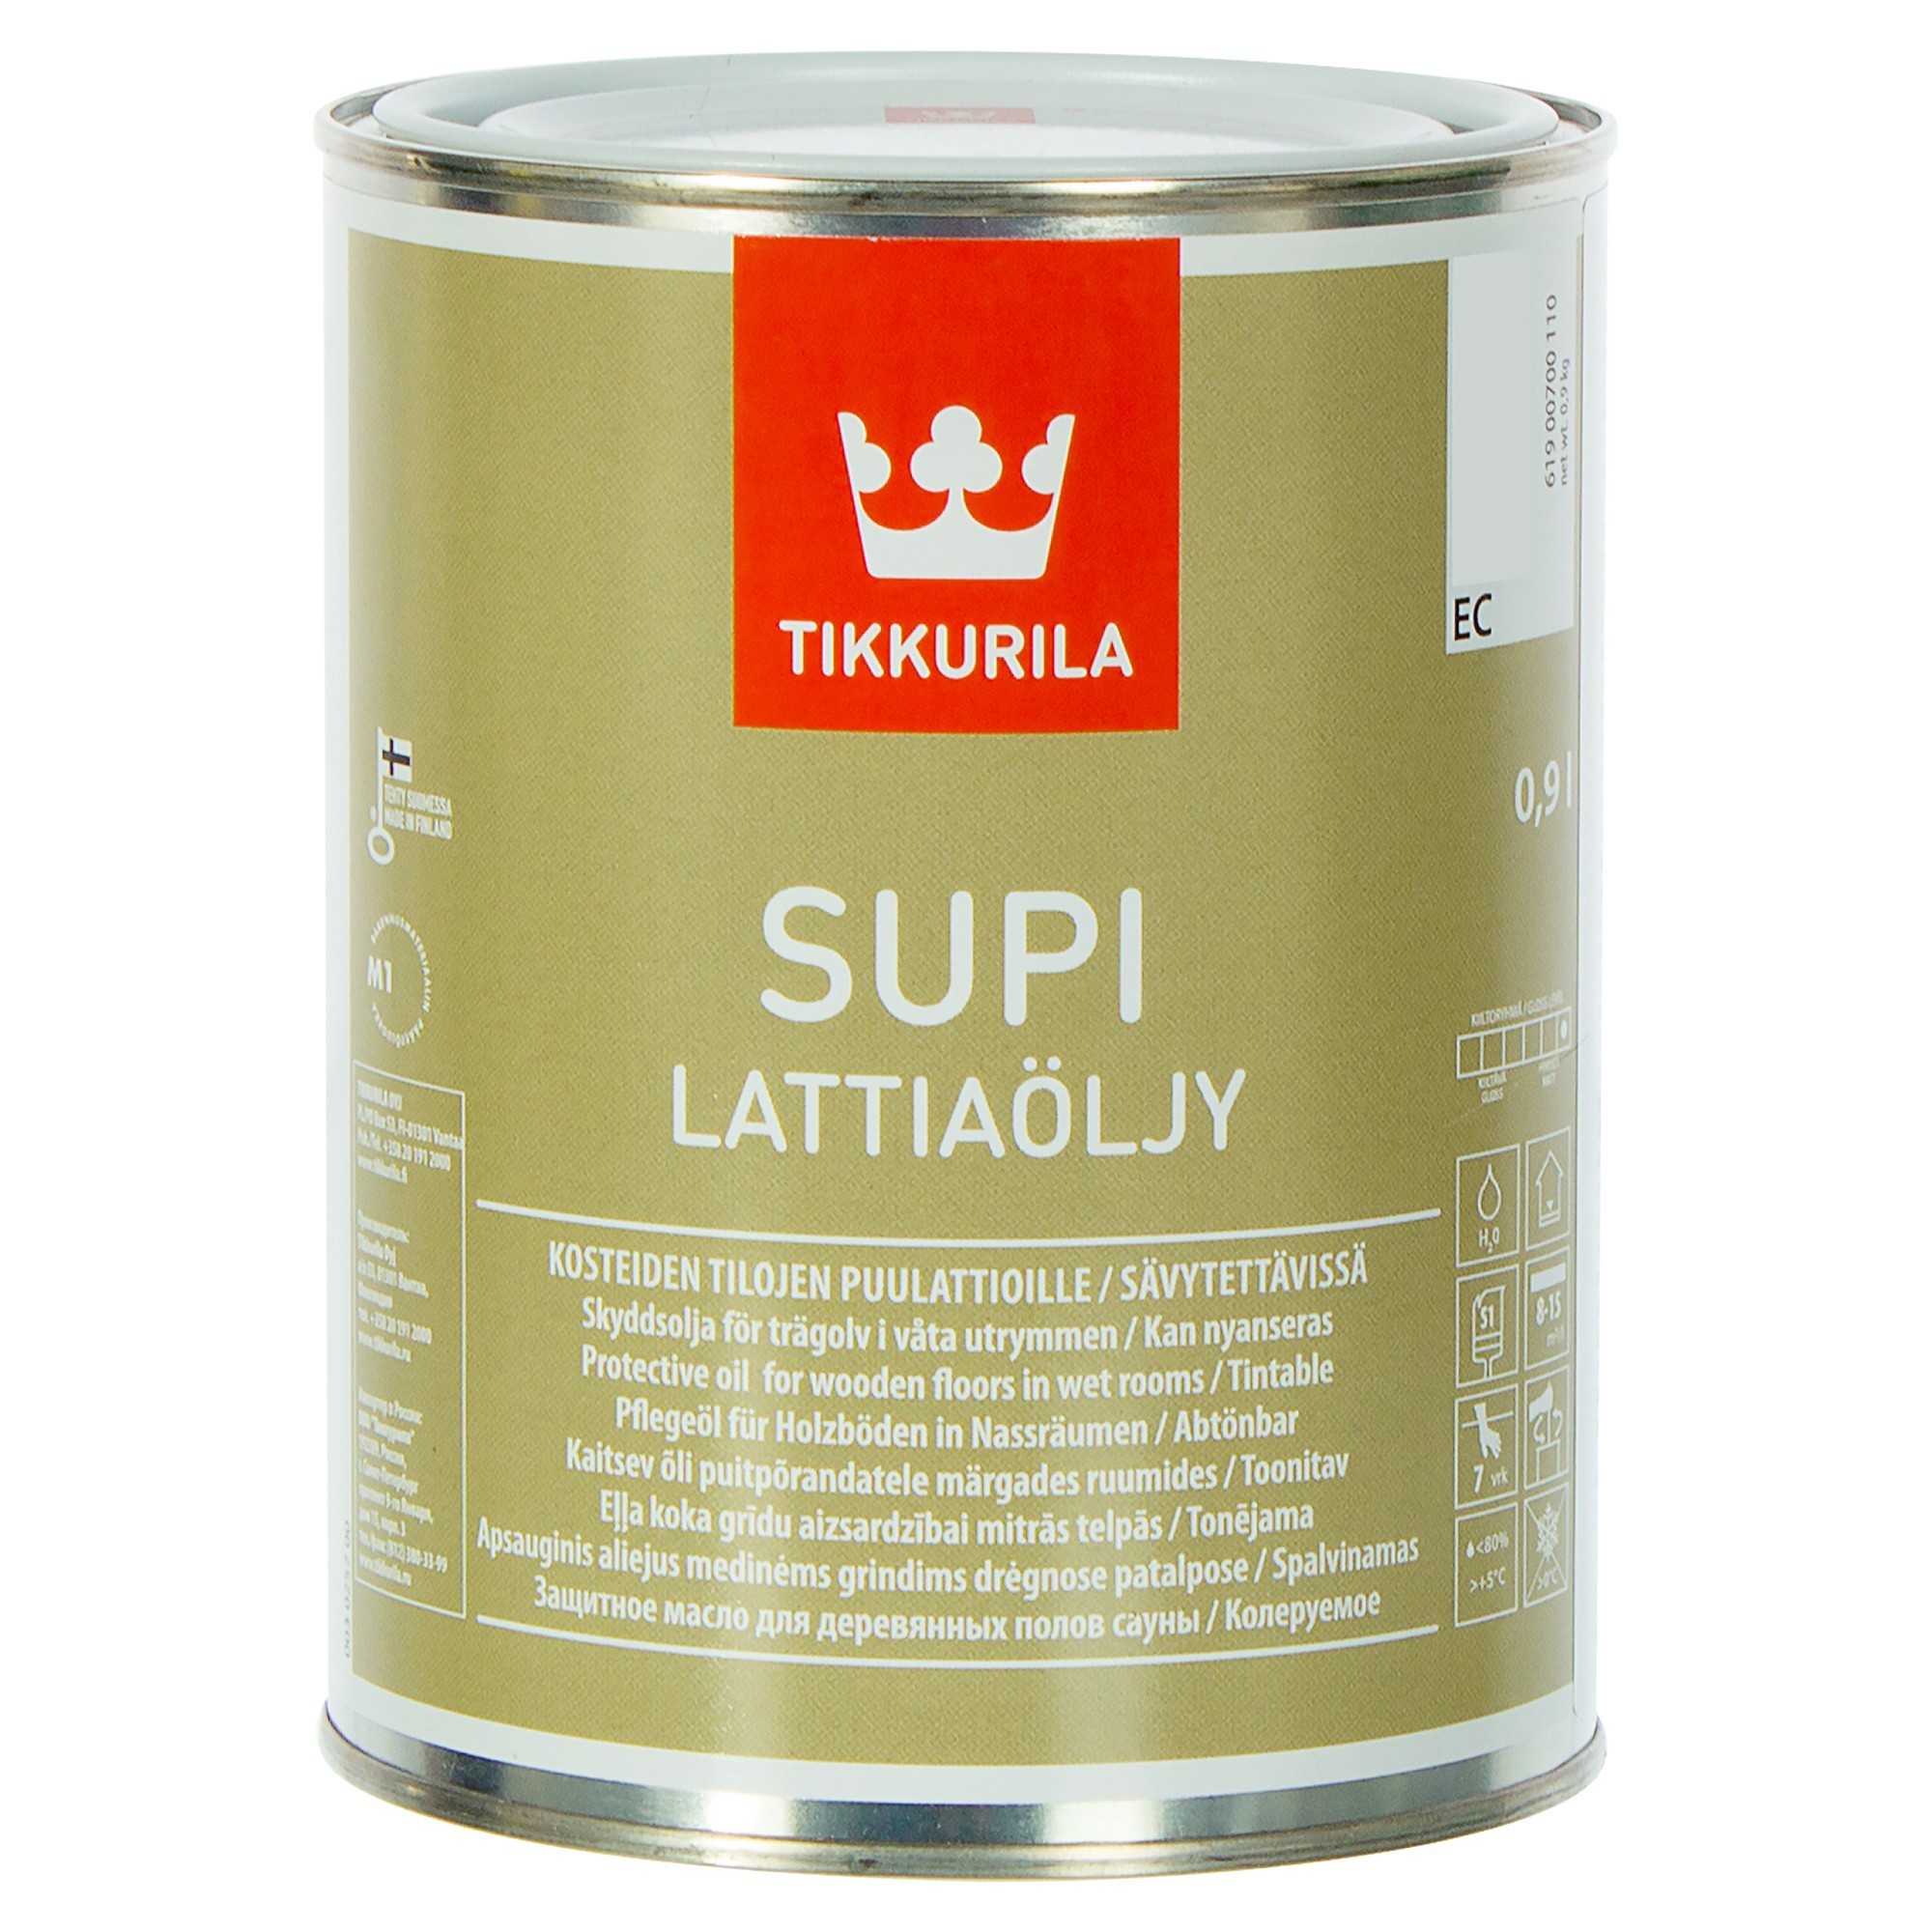 Тиккурила для бань купить. Масло для пола Tikkurila Supi LATTIAOLJY. Tikkurila Supi LATTIAOLJY. Tikkurila Supi для пола в бане. Тиккурила супи Латиаоли (Supi LATTIAOLJY) масло для пола (0,9л).